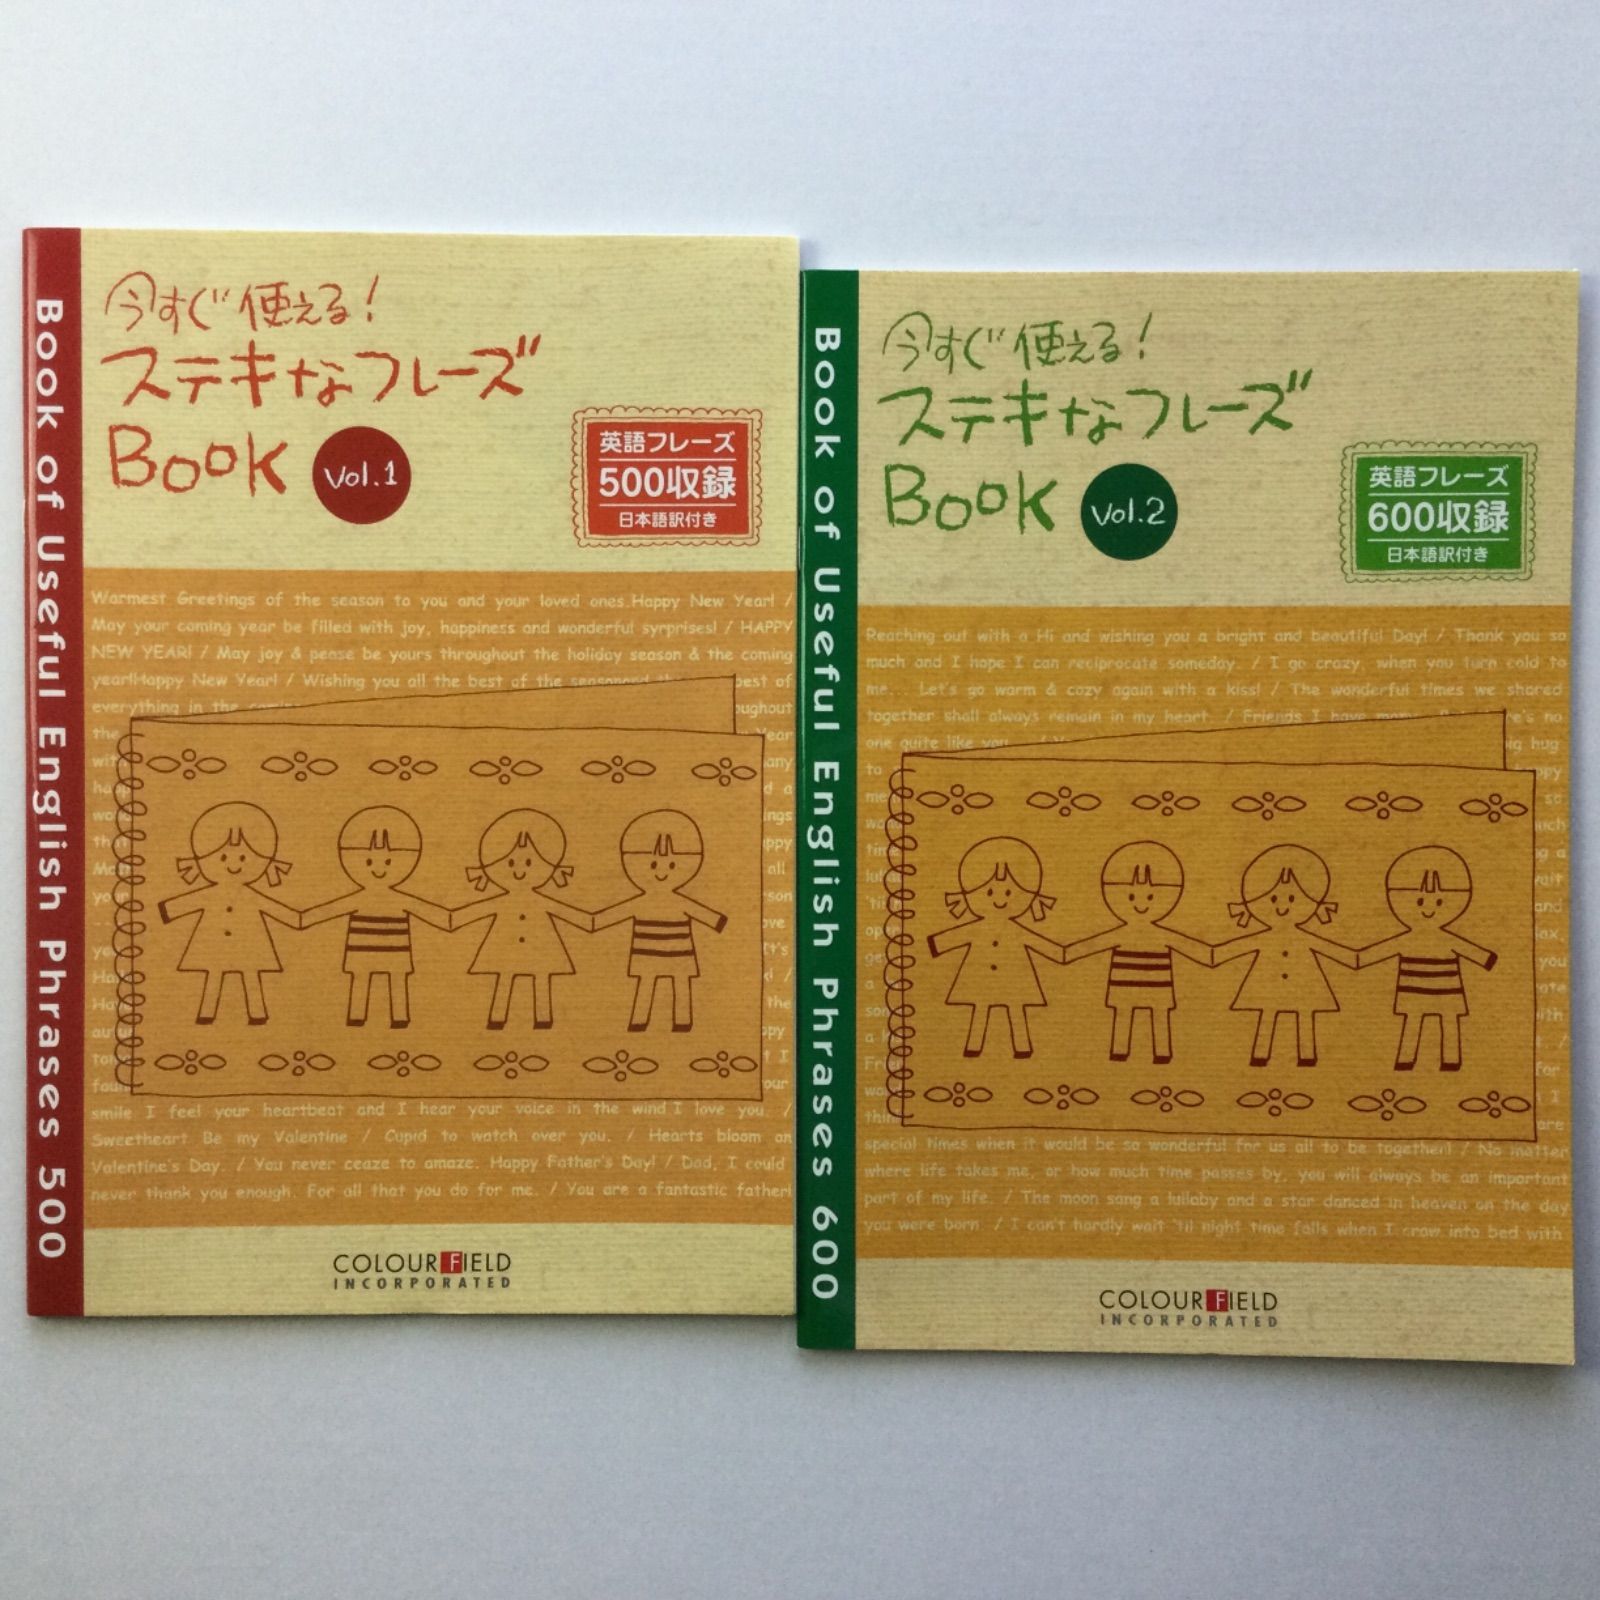 今すぐ使える! ステキなフレーズブック Vol.1＋2 日本語訳付き 2640円 - メルカリ